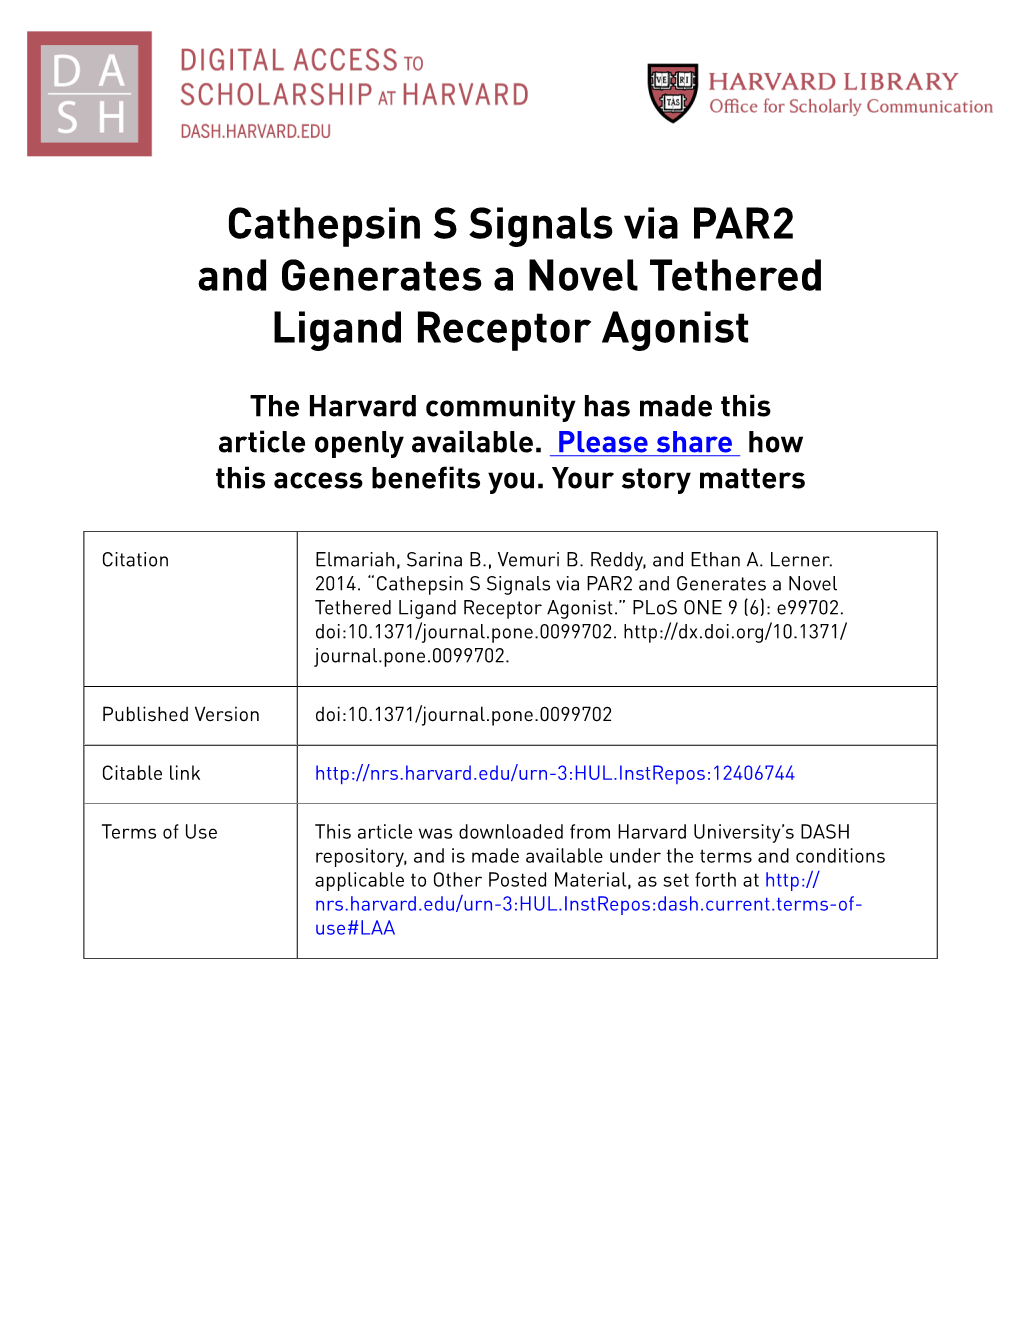 Cathepsin S Signals Via PAR2 and Generates a Novel Tethered Ligand Receptor Agonist